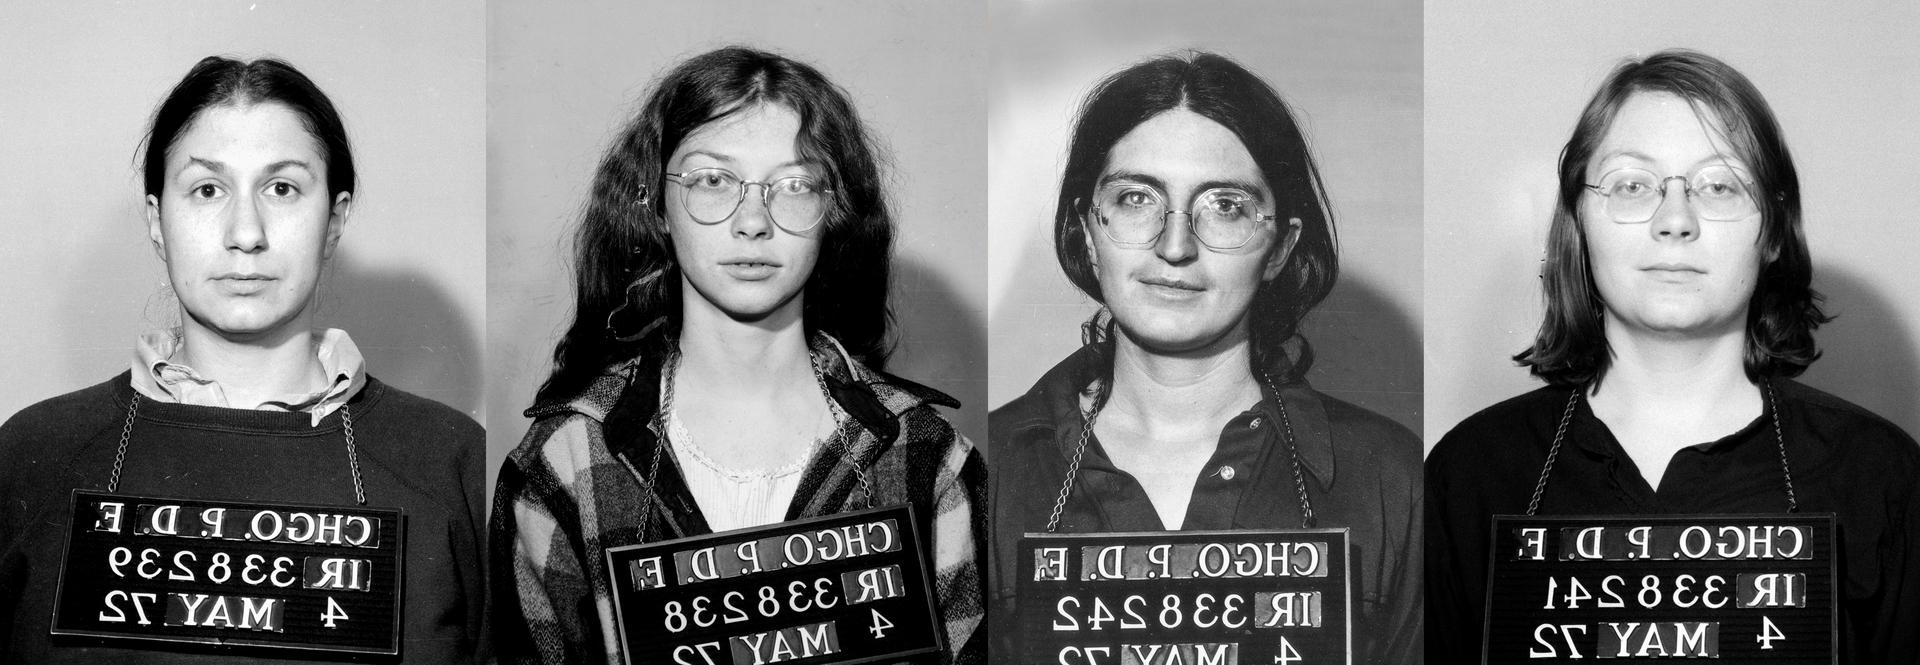 1972年Jane成员在芝加哥被捕后的四张大头照